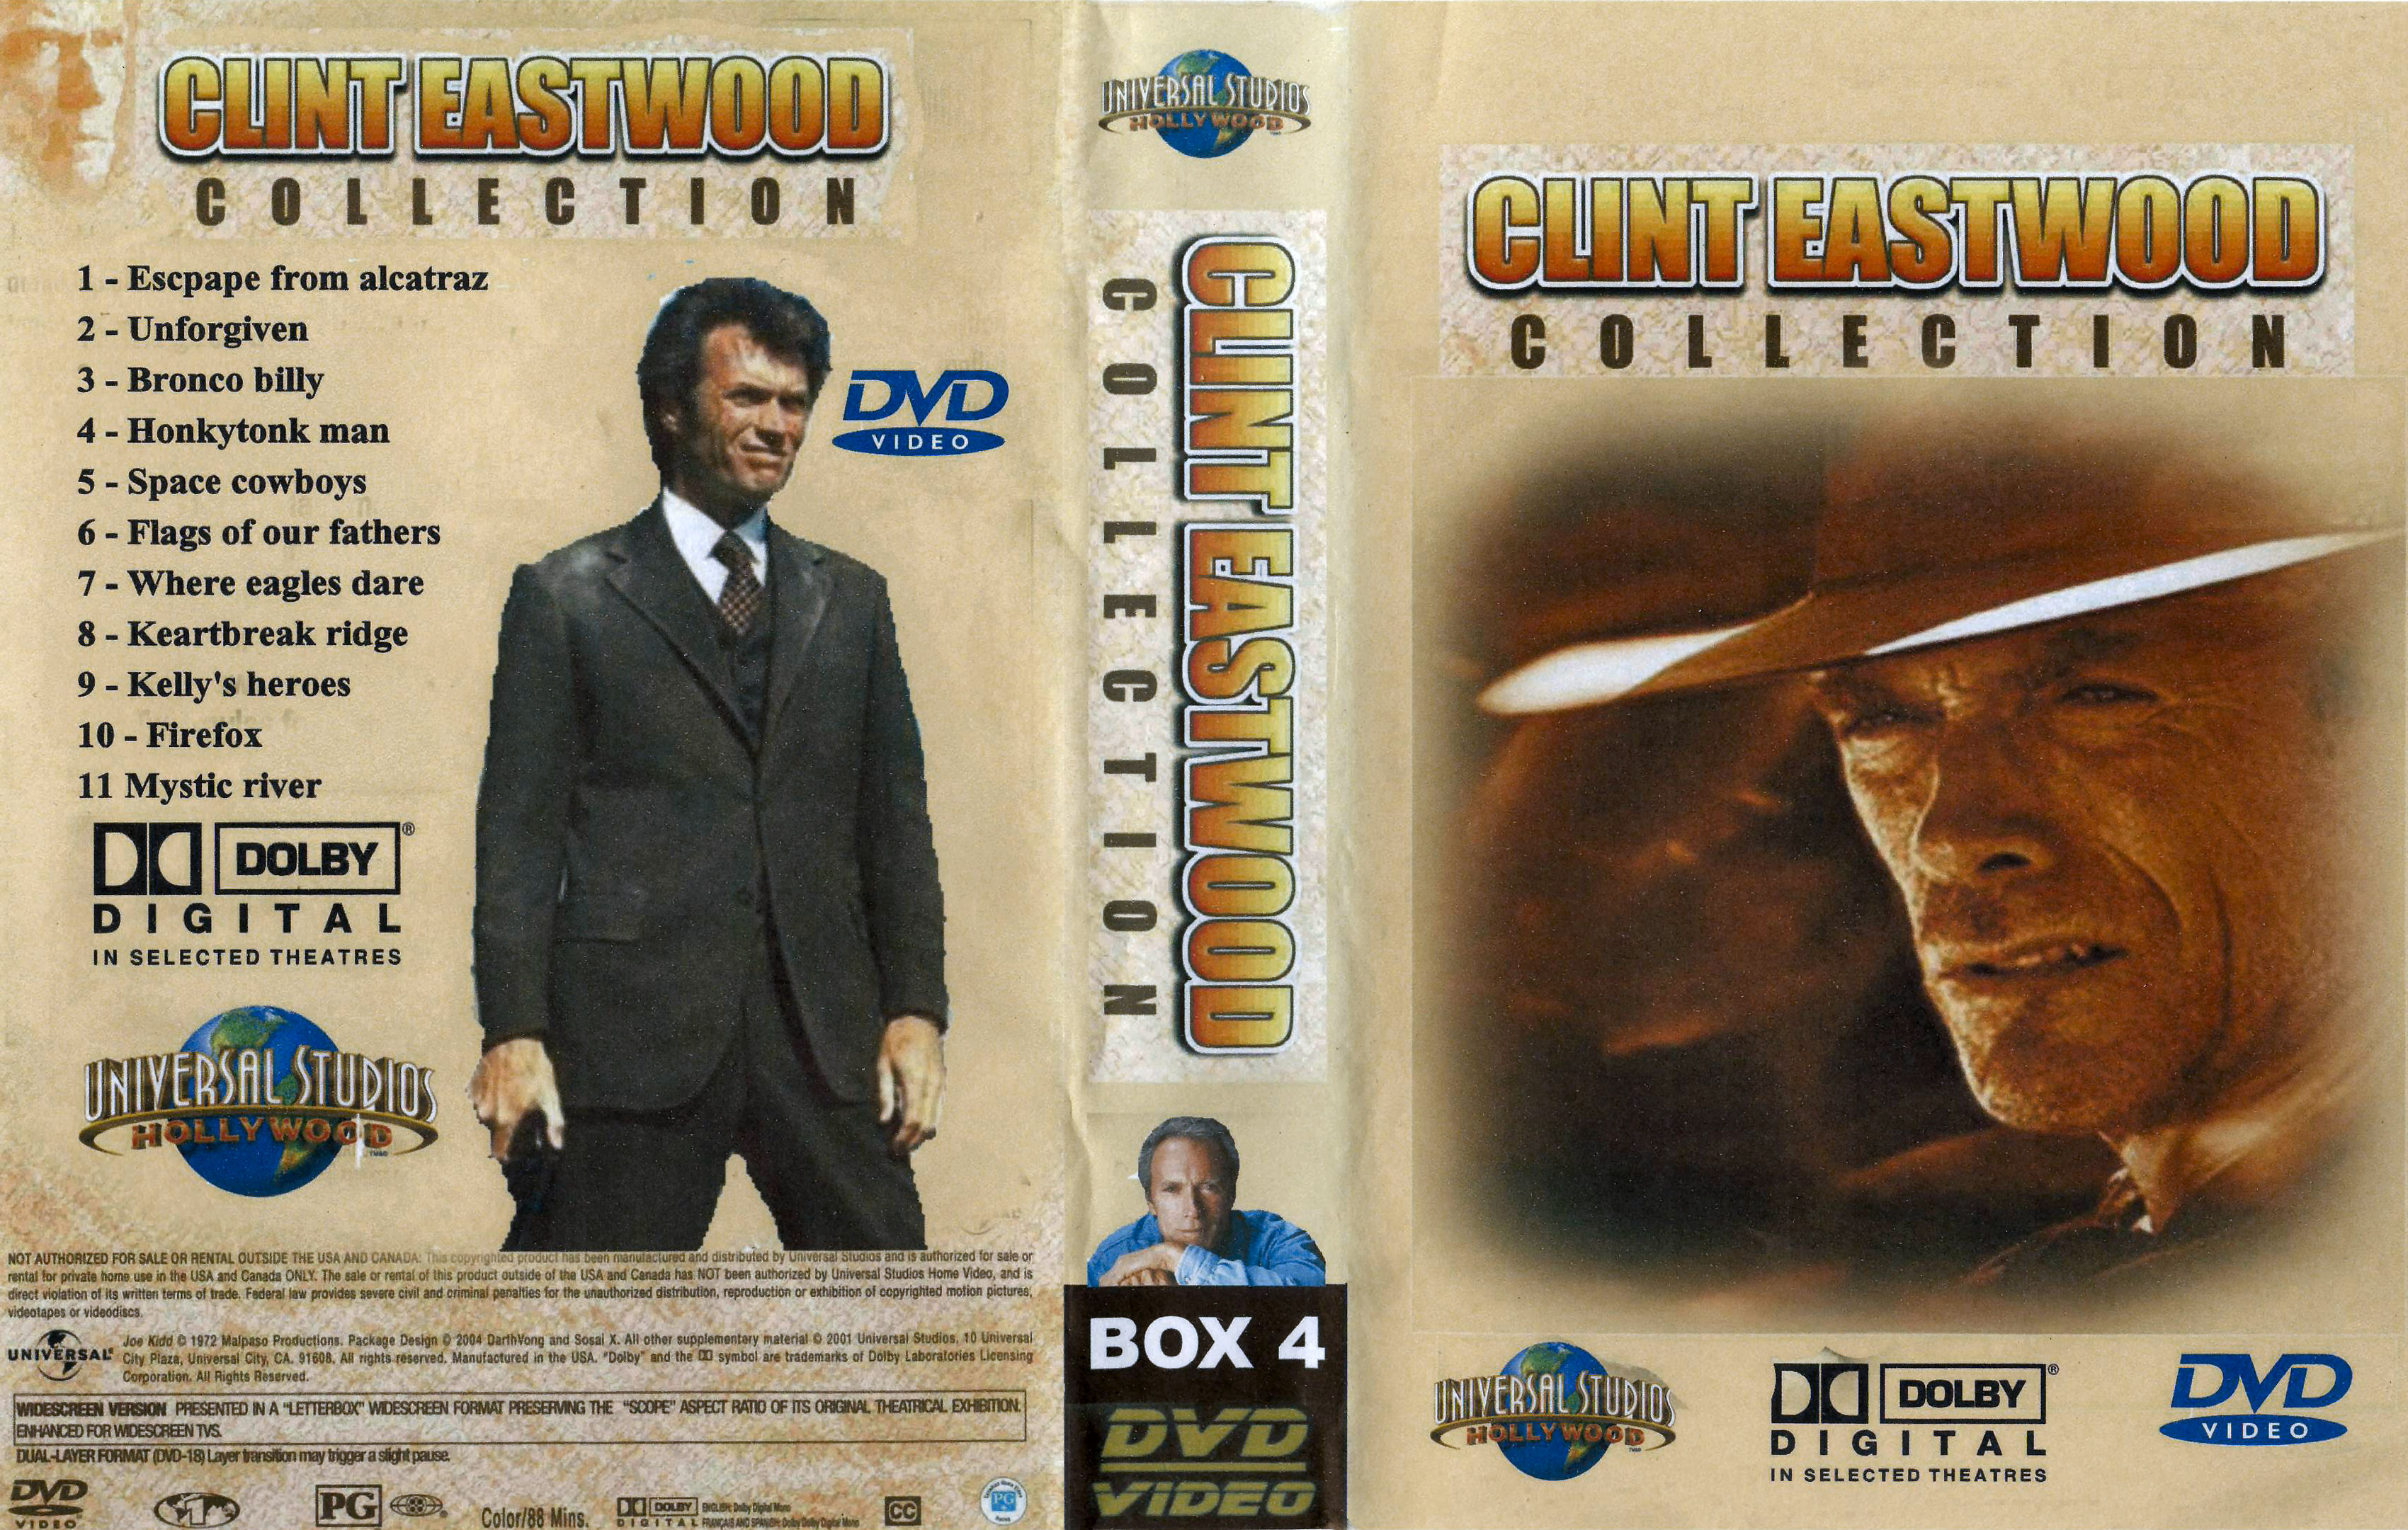 Clint Eastwood Collectie Box 4 DvD 2 van 10